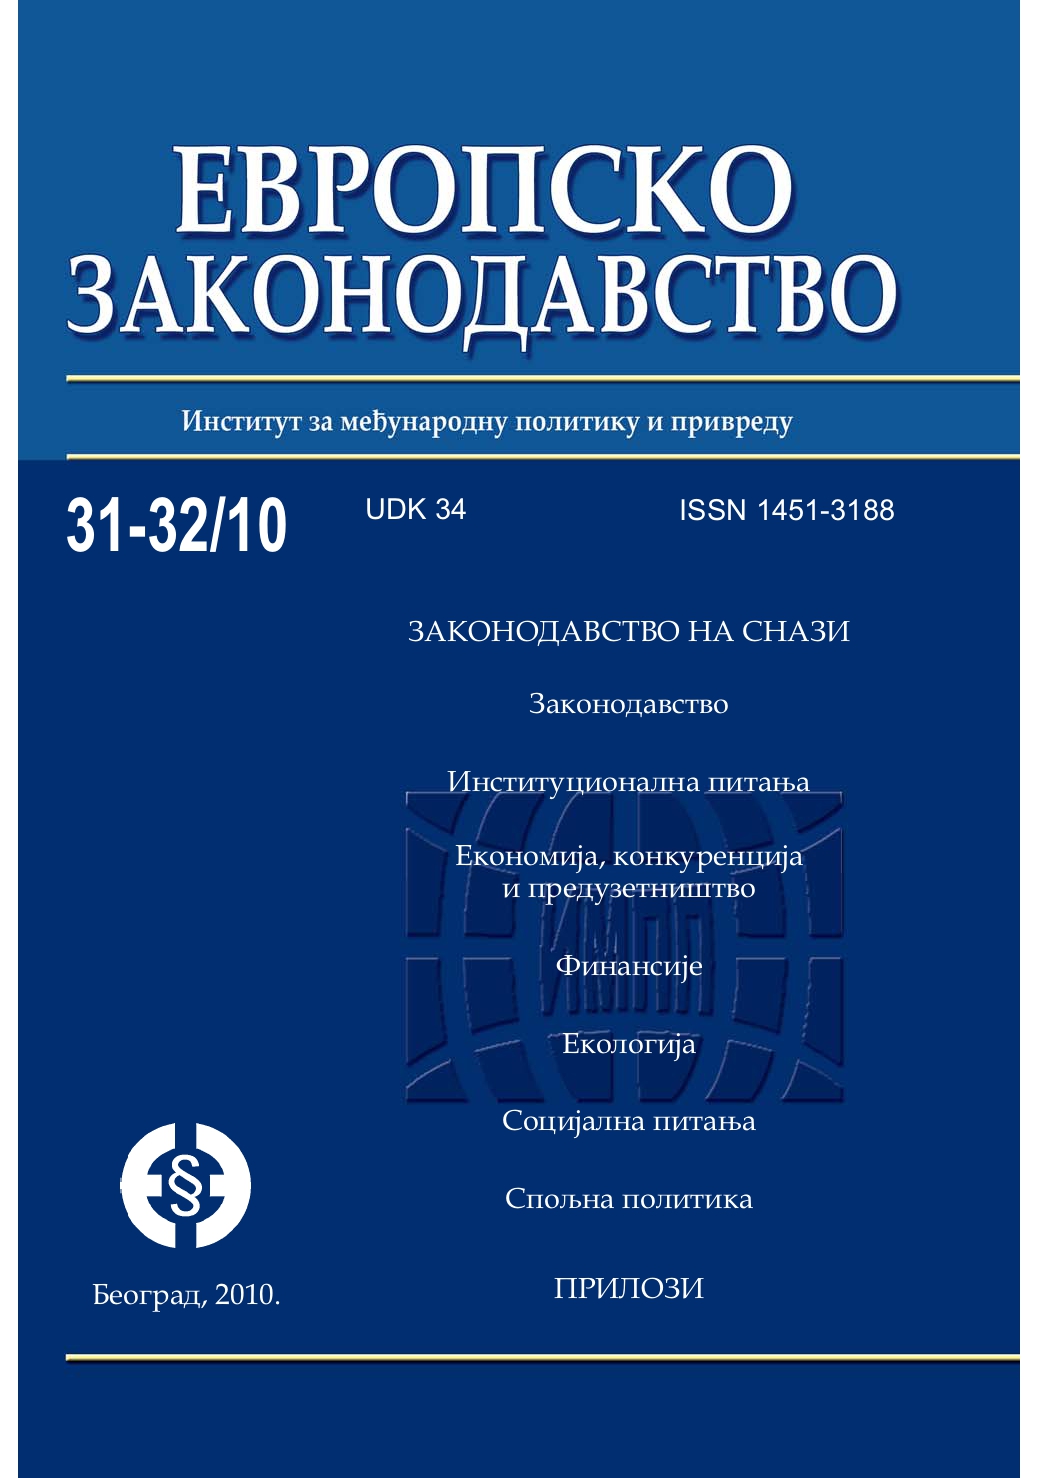 Програм Фискалис 2013 (2008-2013)